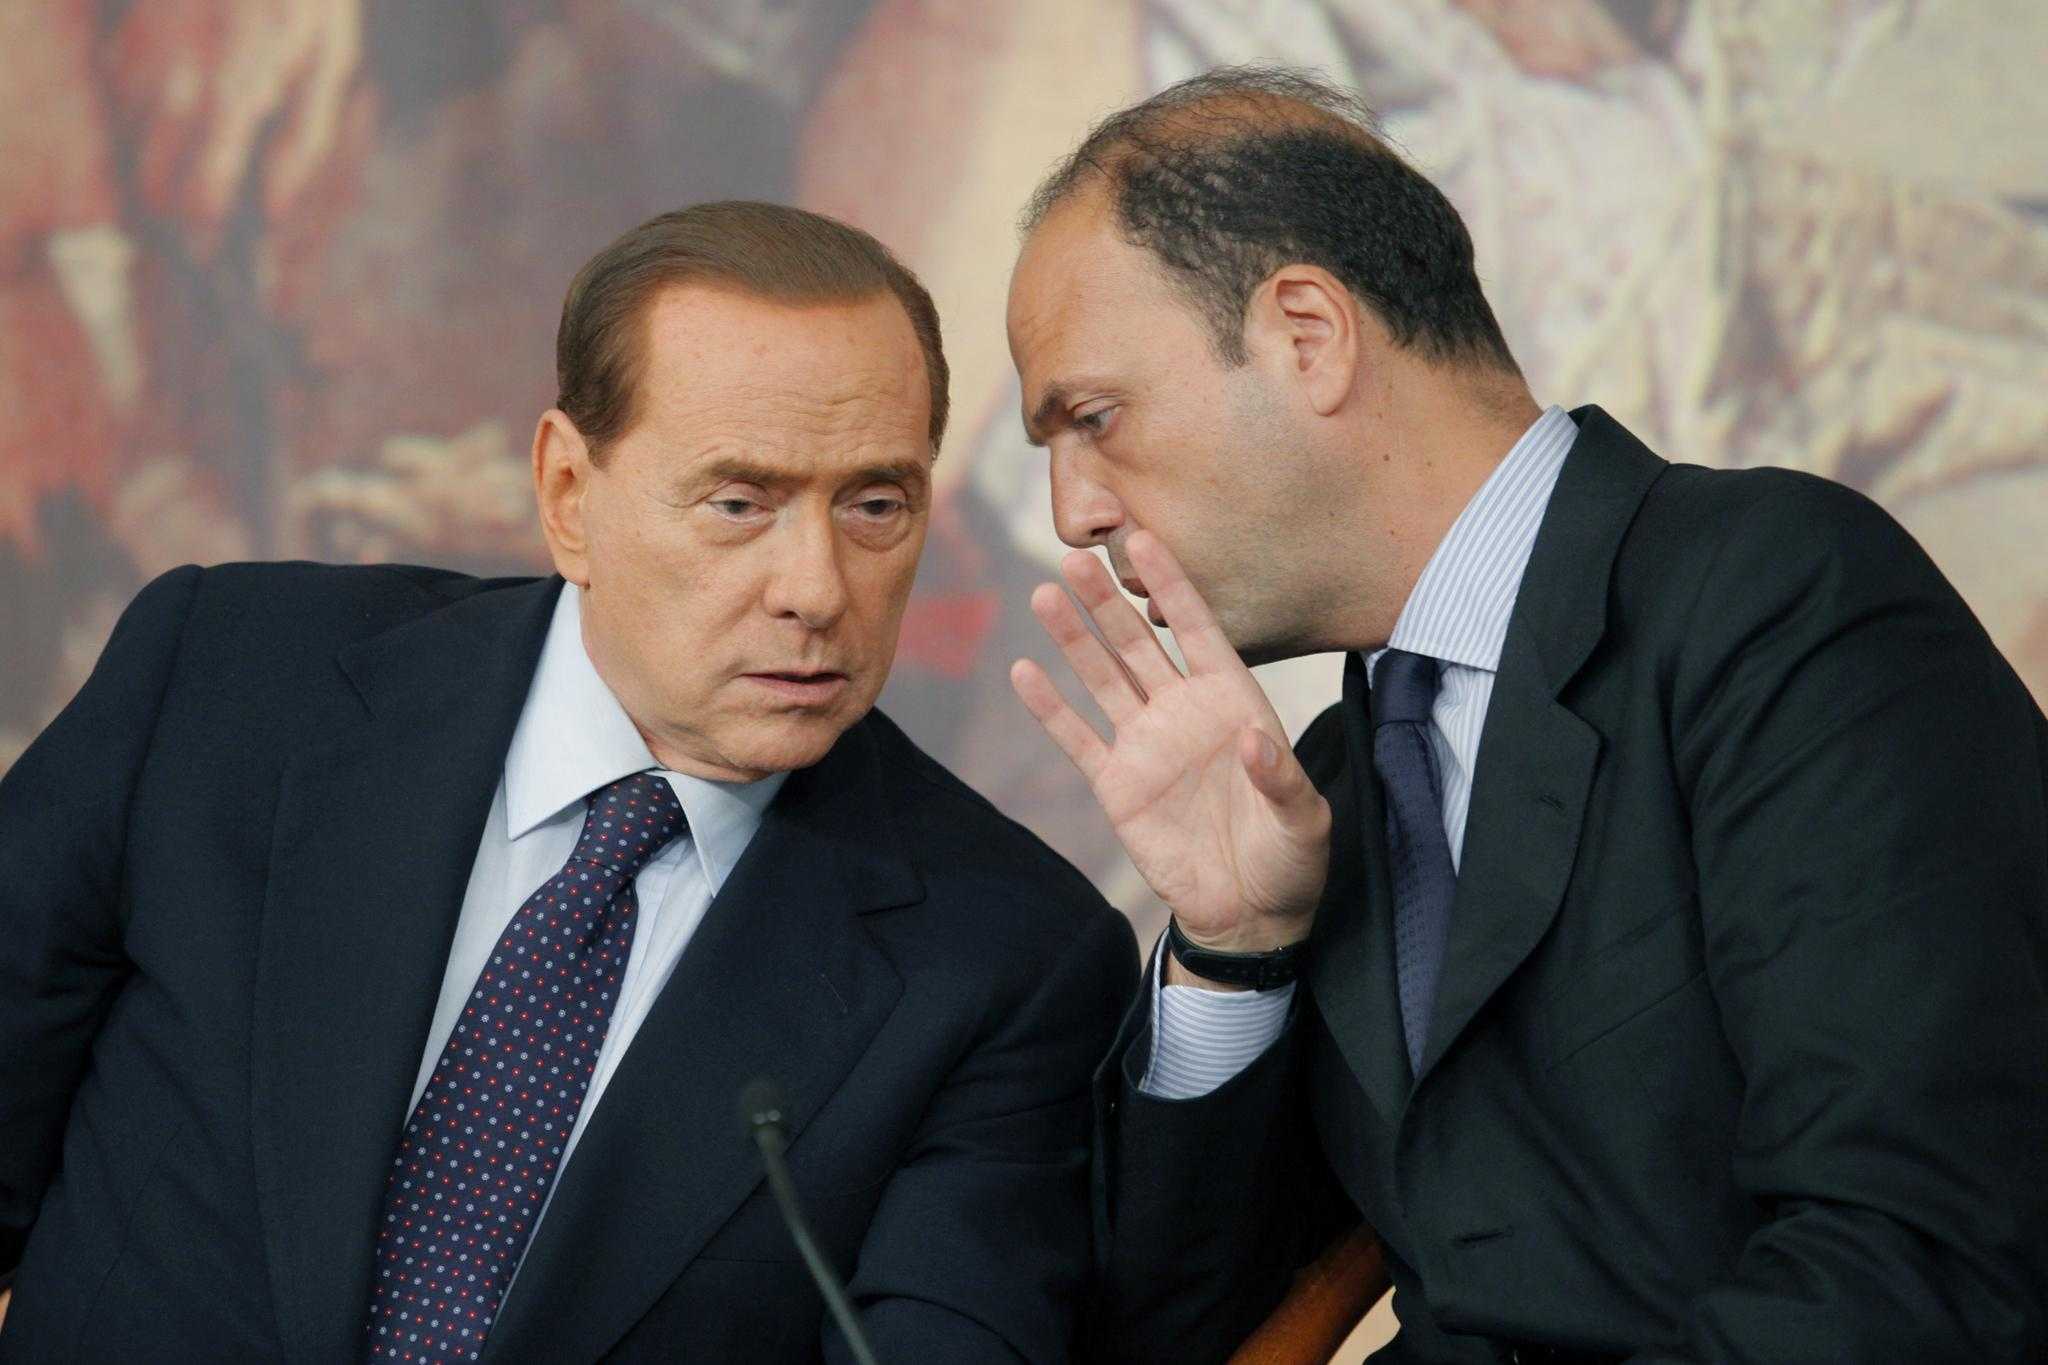 Verso il Quirinale, le mosse del centrodestra. Berlusconi richiama Brunetta e Alfano avverte Renzi